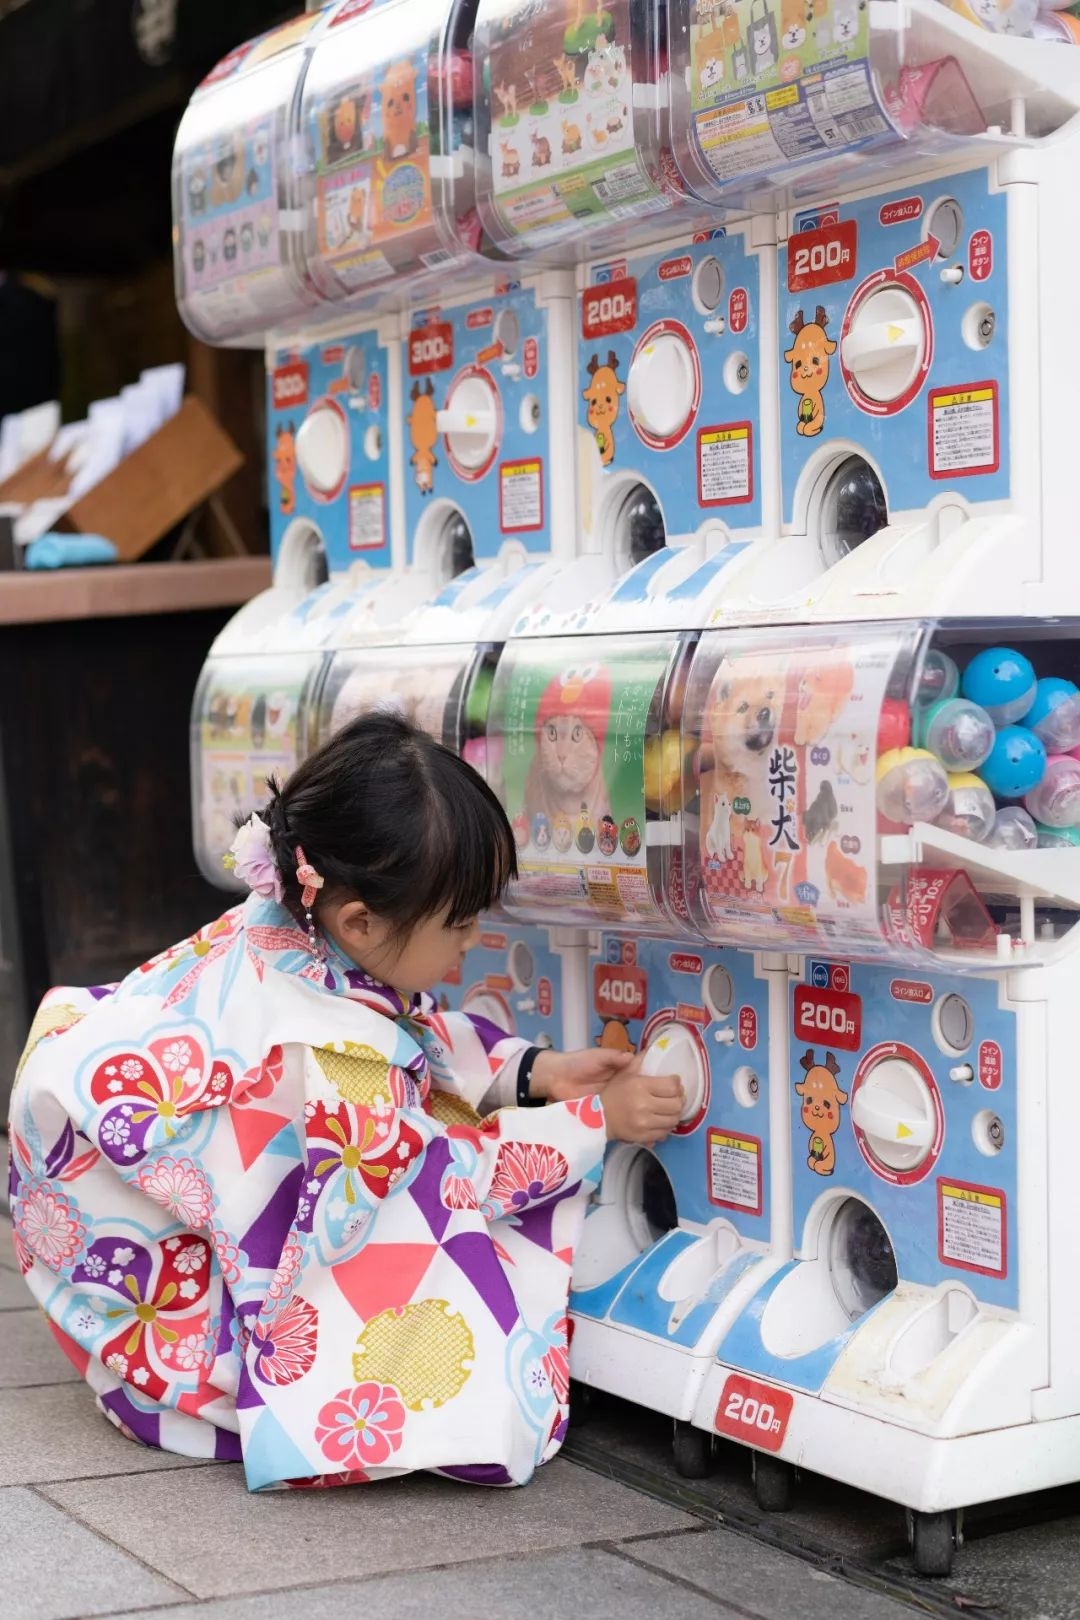 与自动贩卖机在日本街头平分天下的,便是霓虹特产——扭蛋机,无论是